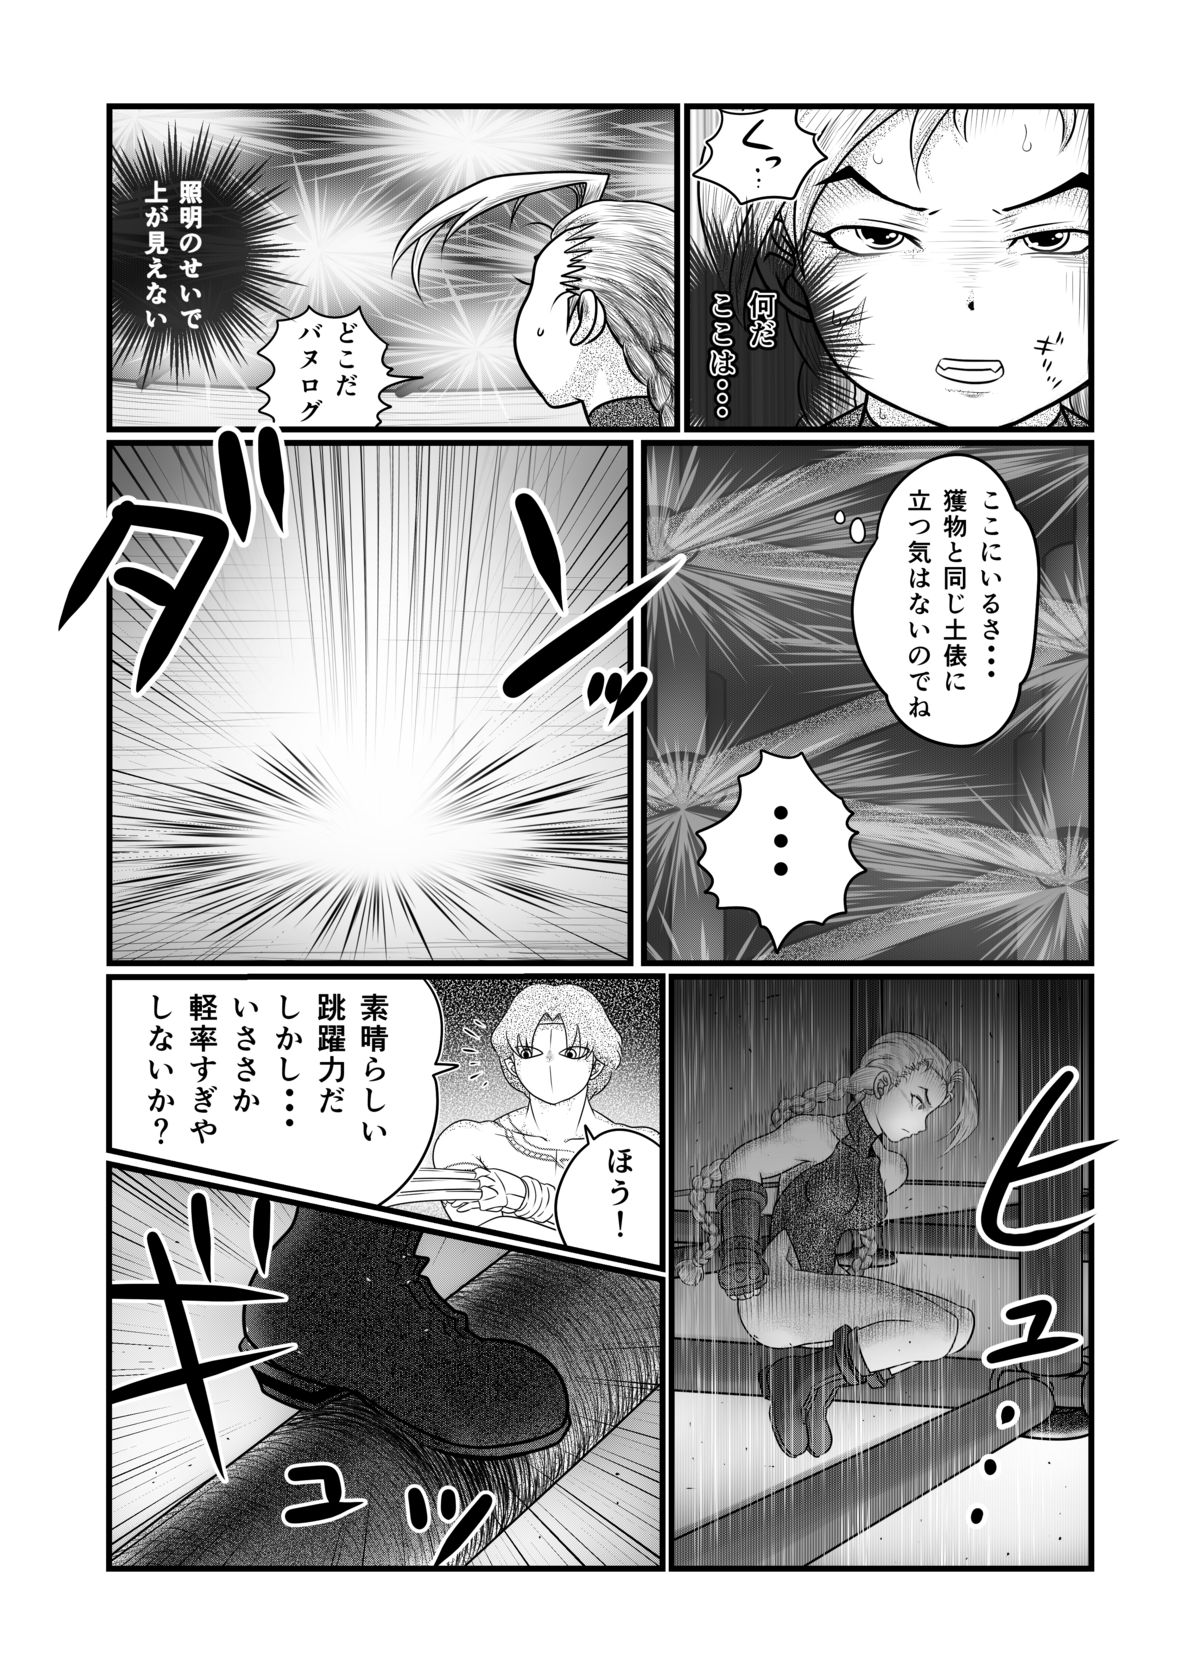 [Nomerikomu] Banurog no Shibou Yuugi (Street Fighter) page 13 full